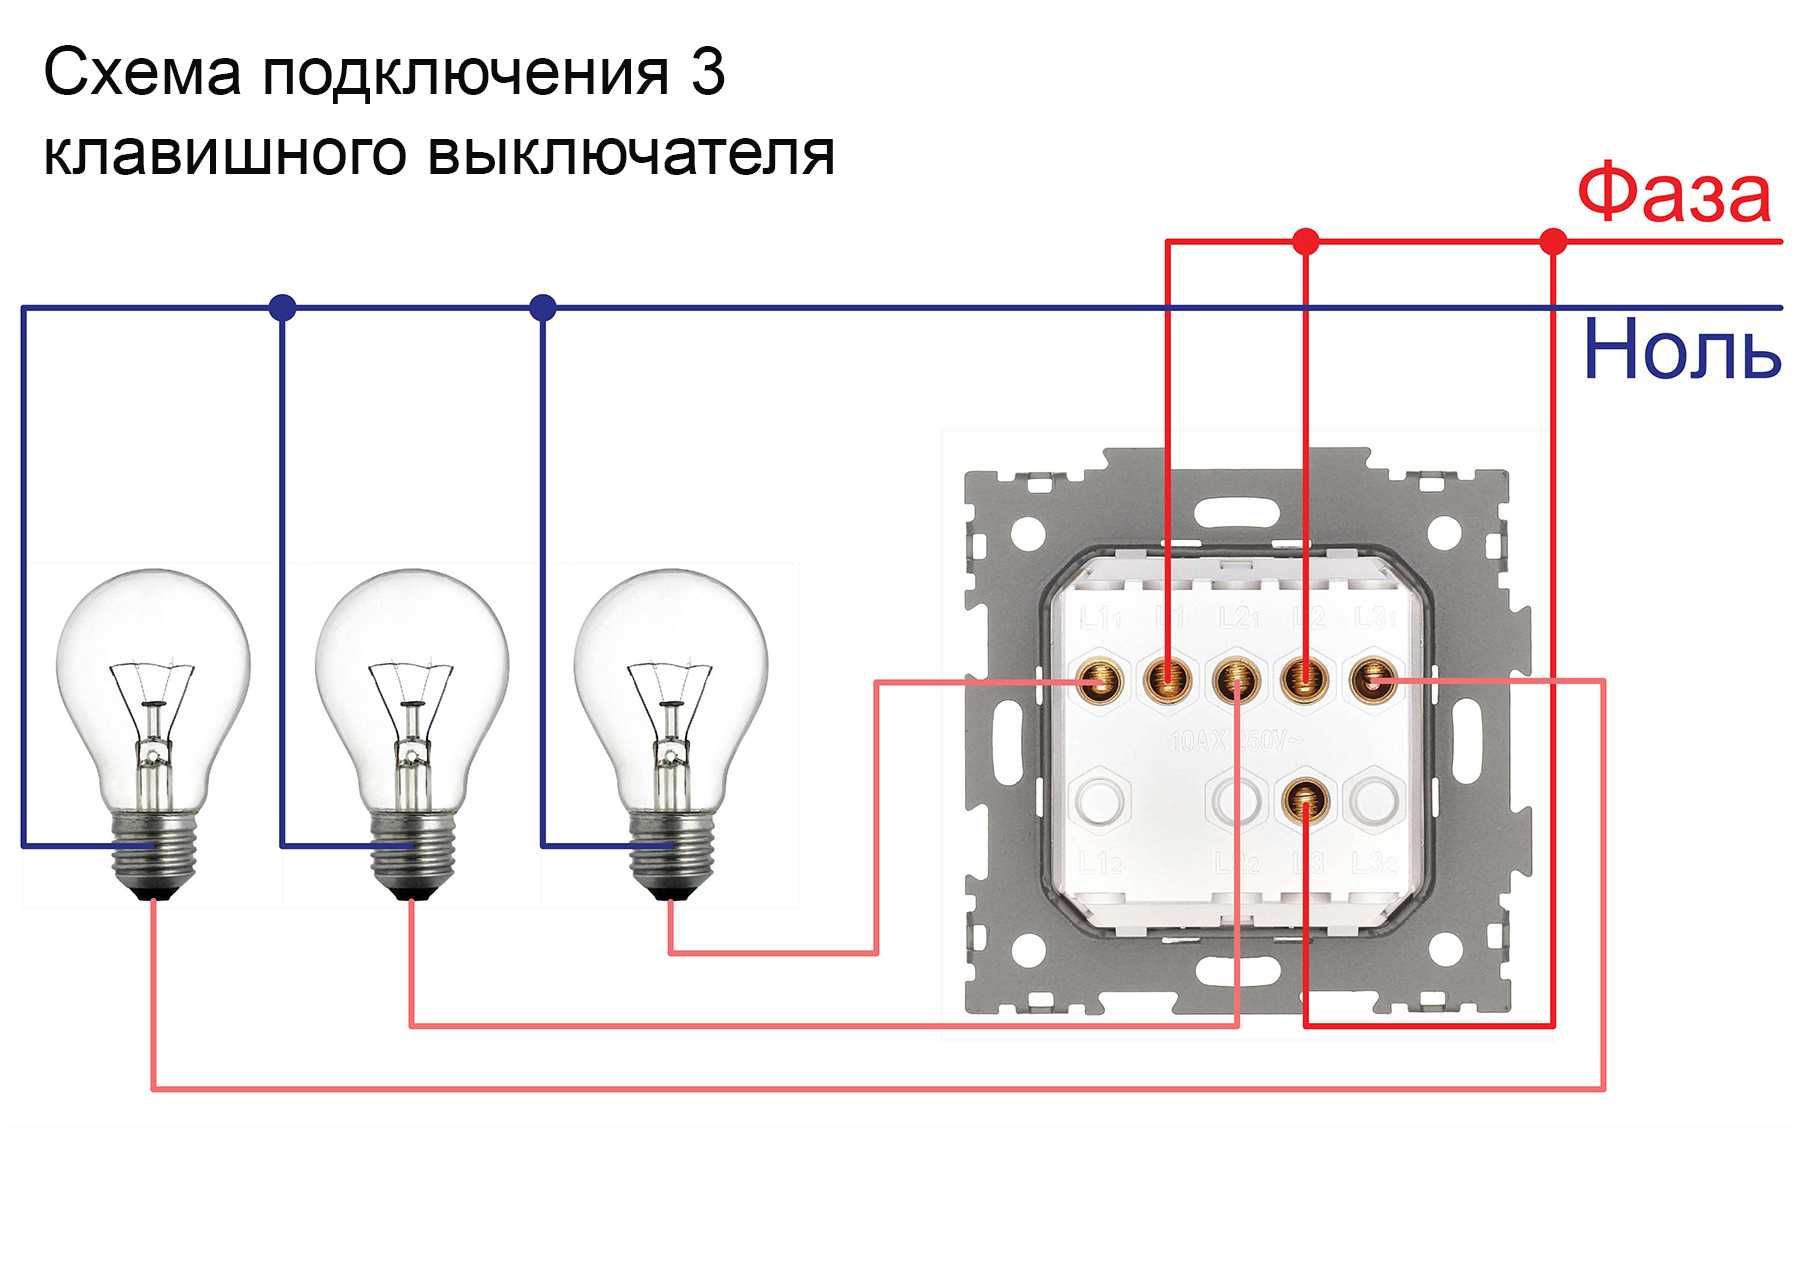 Схема подключения выключателя света с тремя клавишами